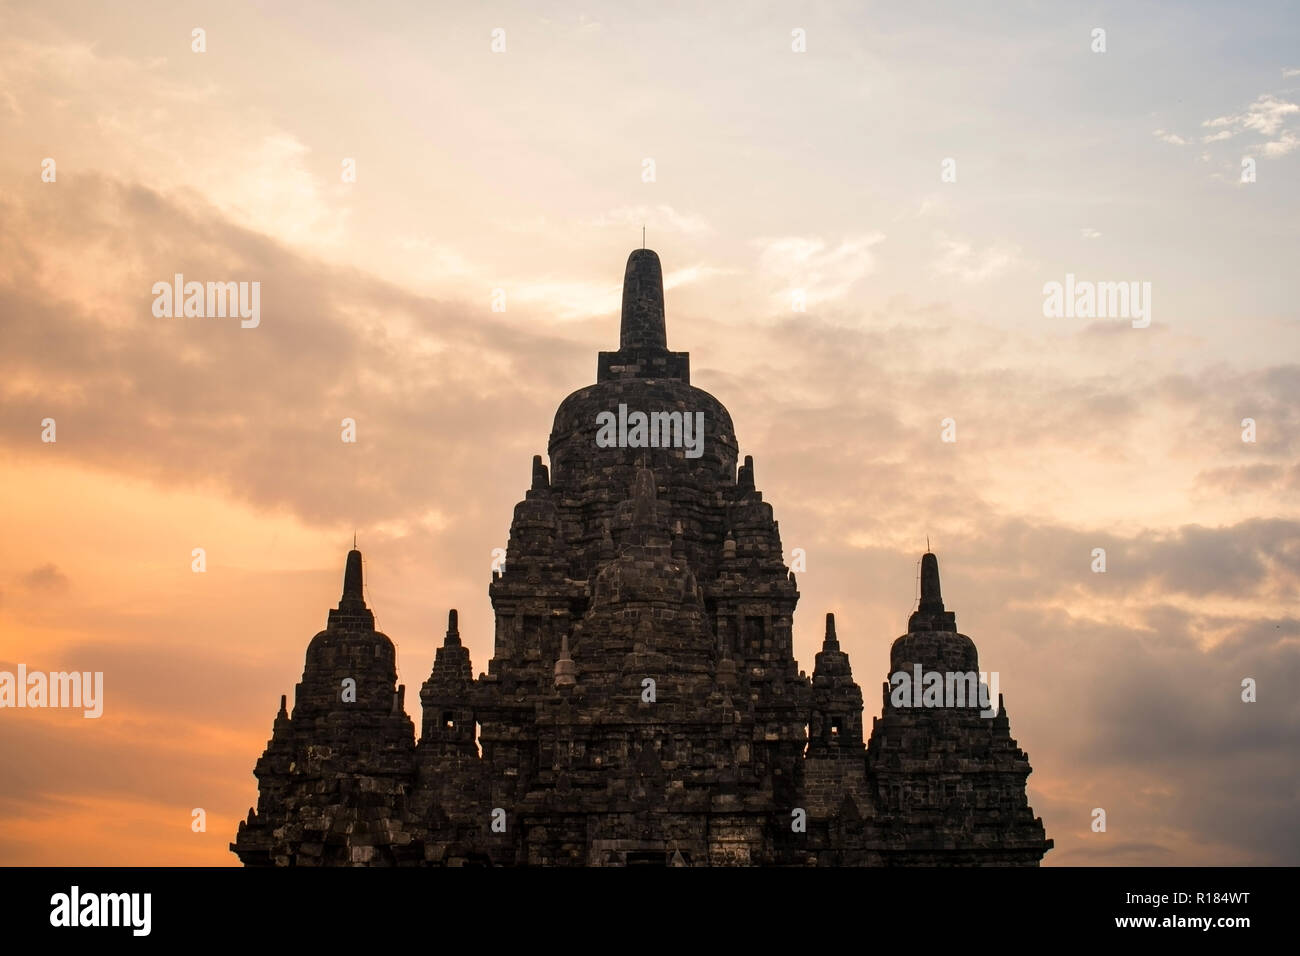 candi sewu stupa Stock Photo